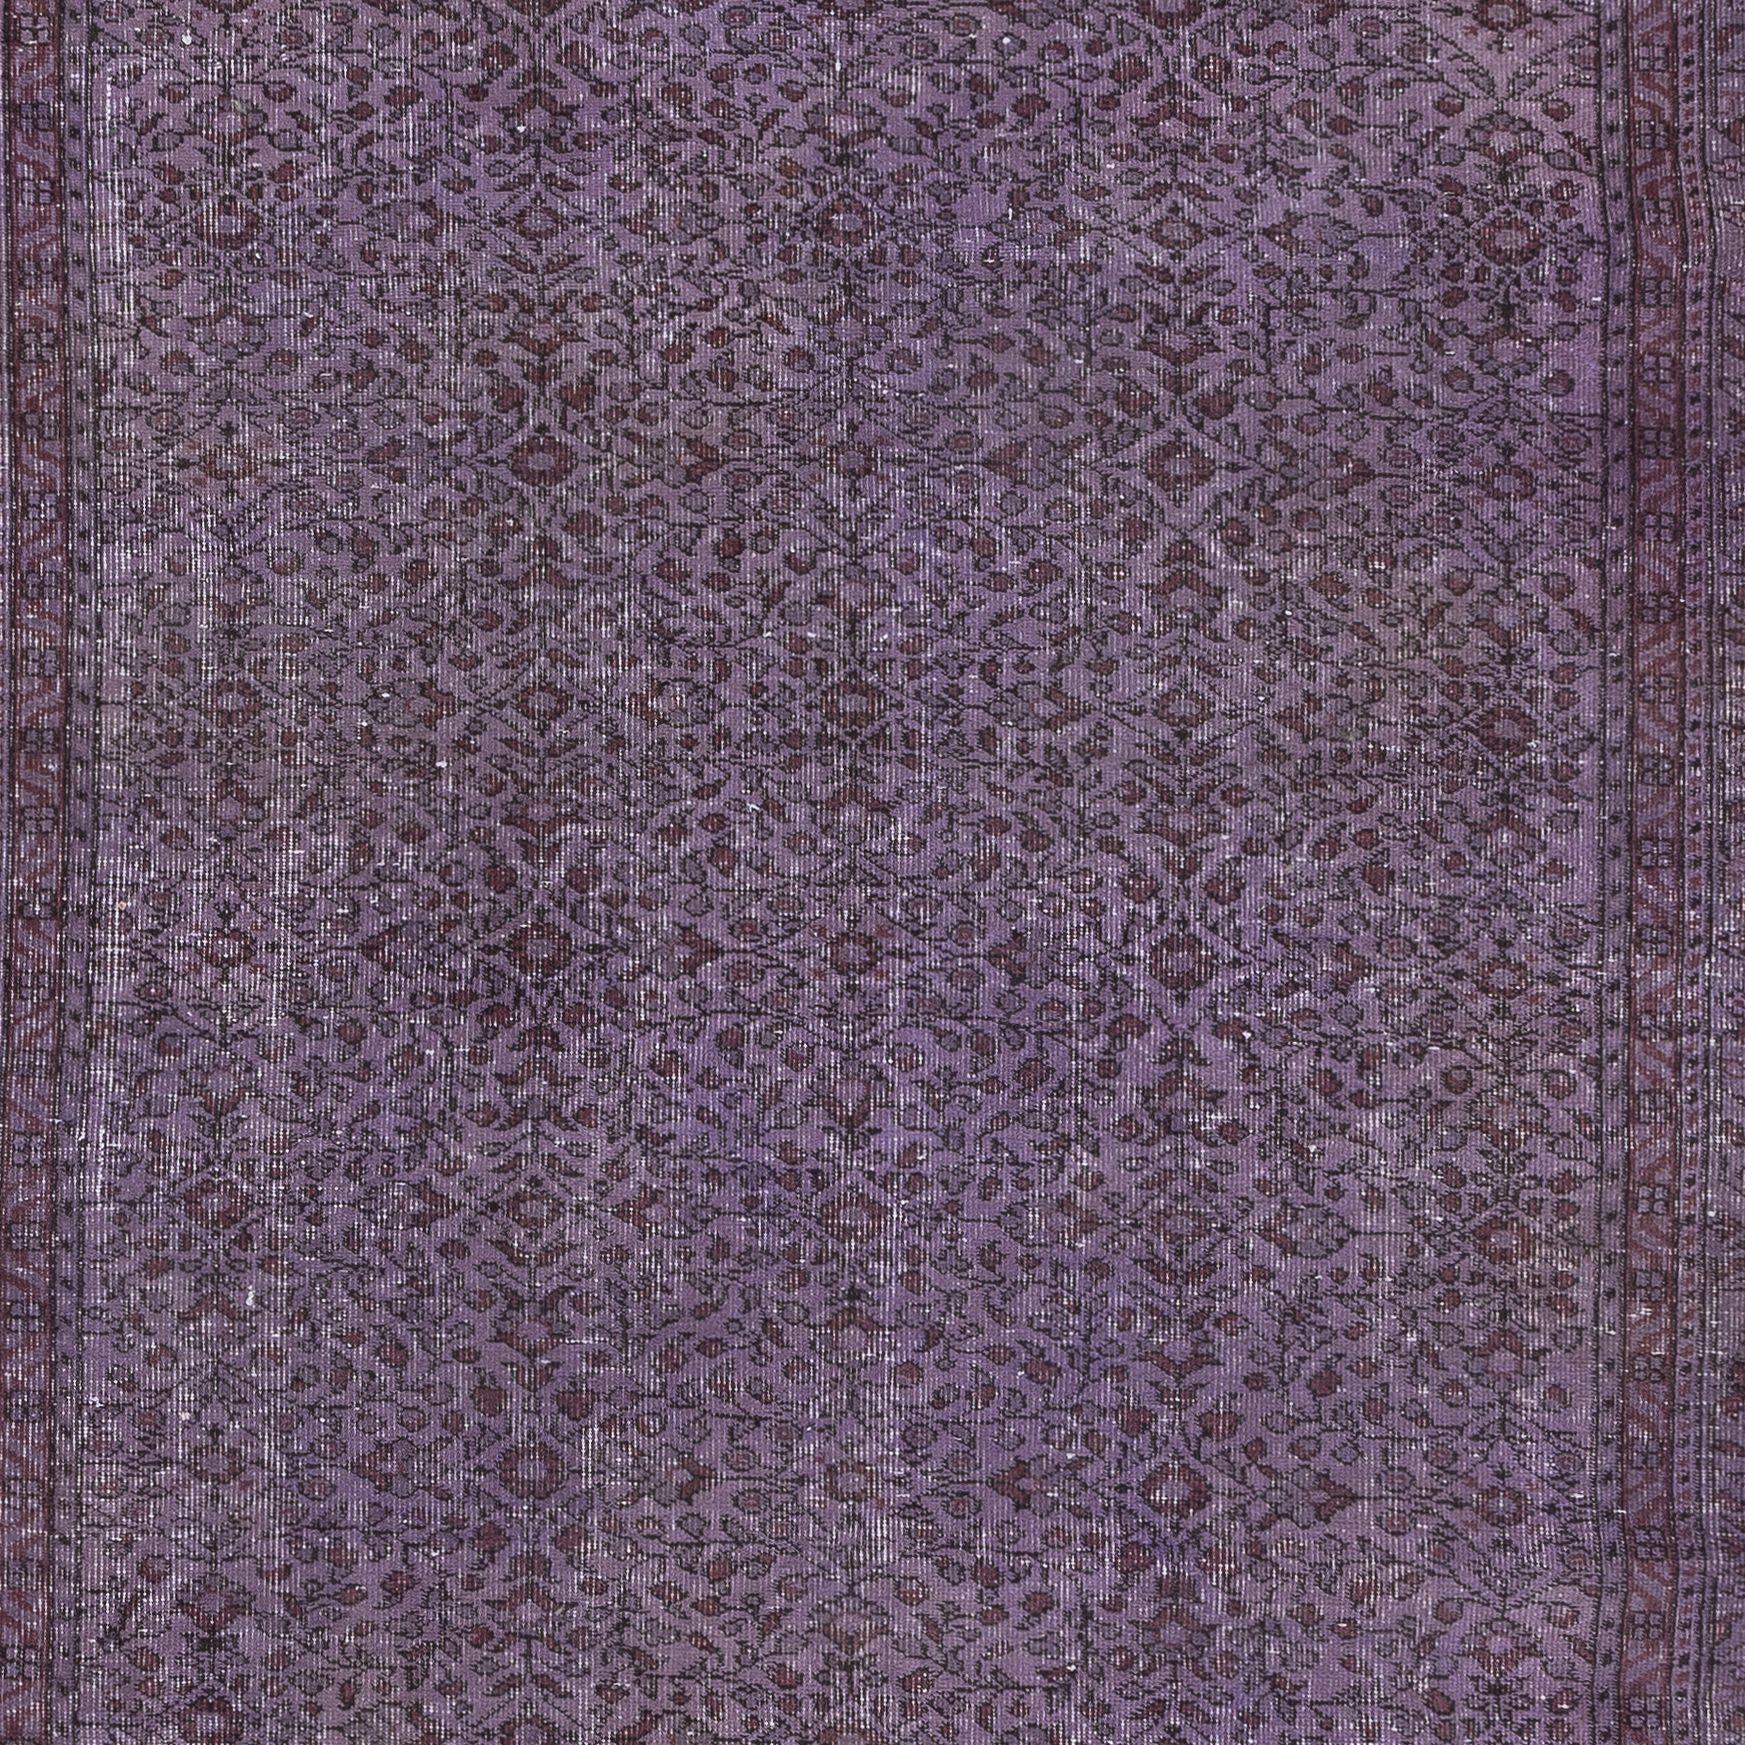 6.2x9.3 Ft Prächtige handgefertigte türkische Teppich mit Blumen-Design & lila Hintergrund (Moderne)